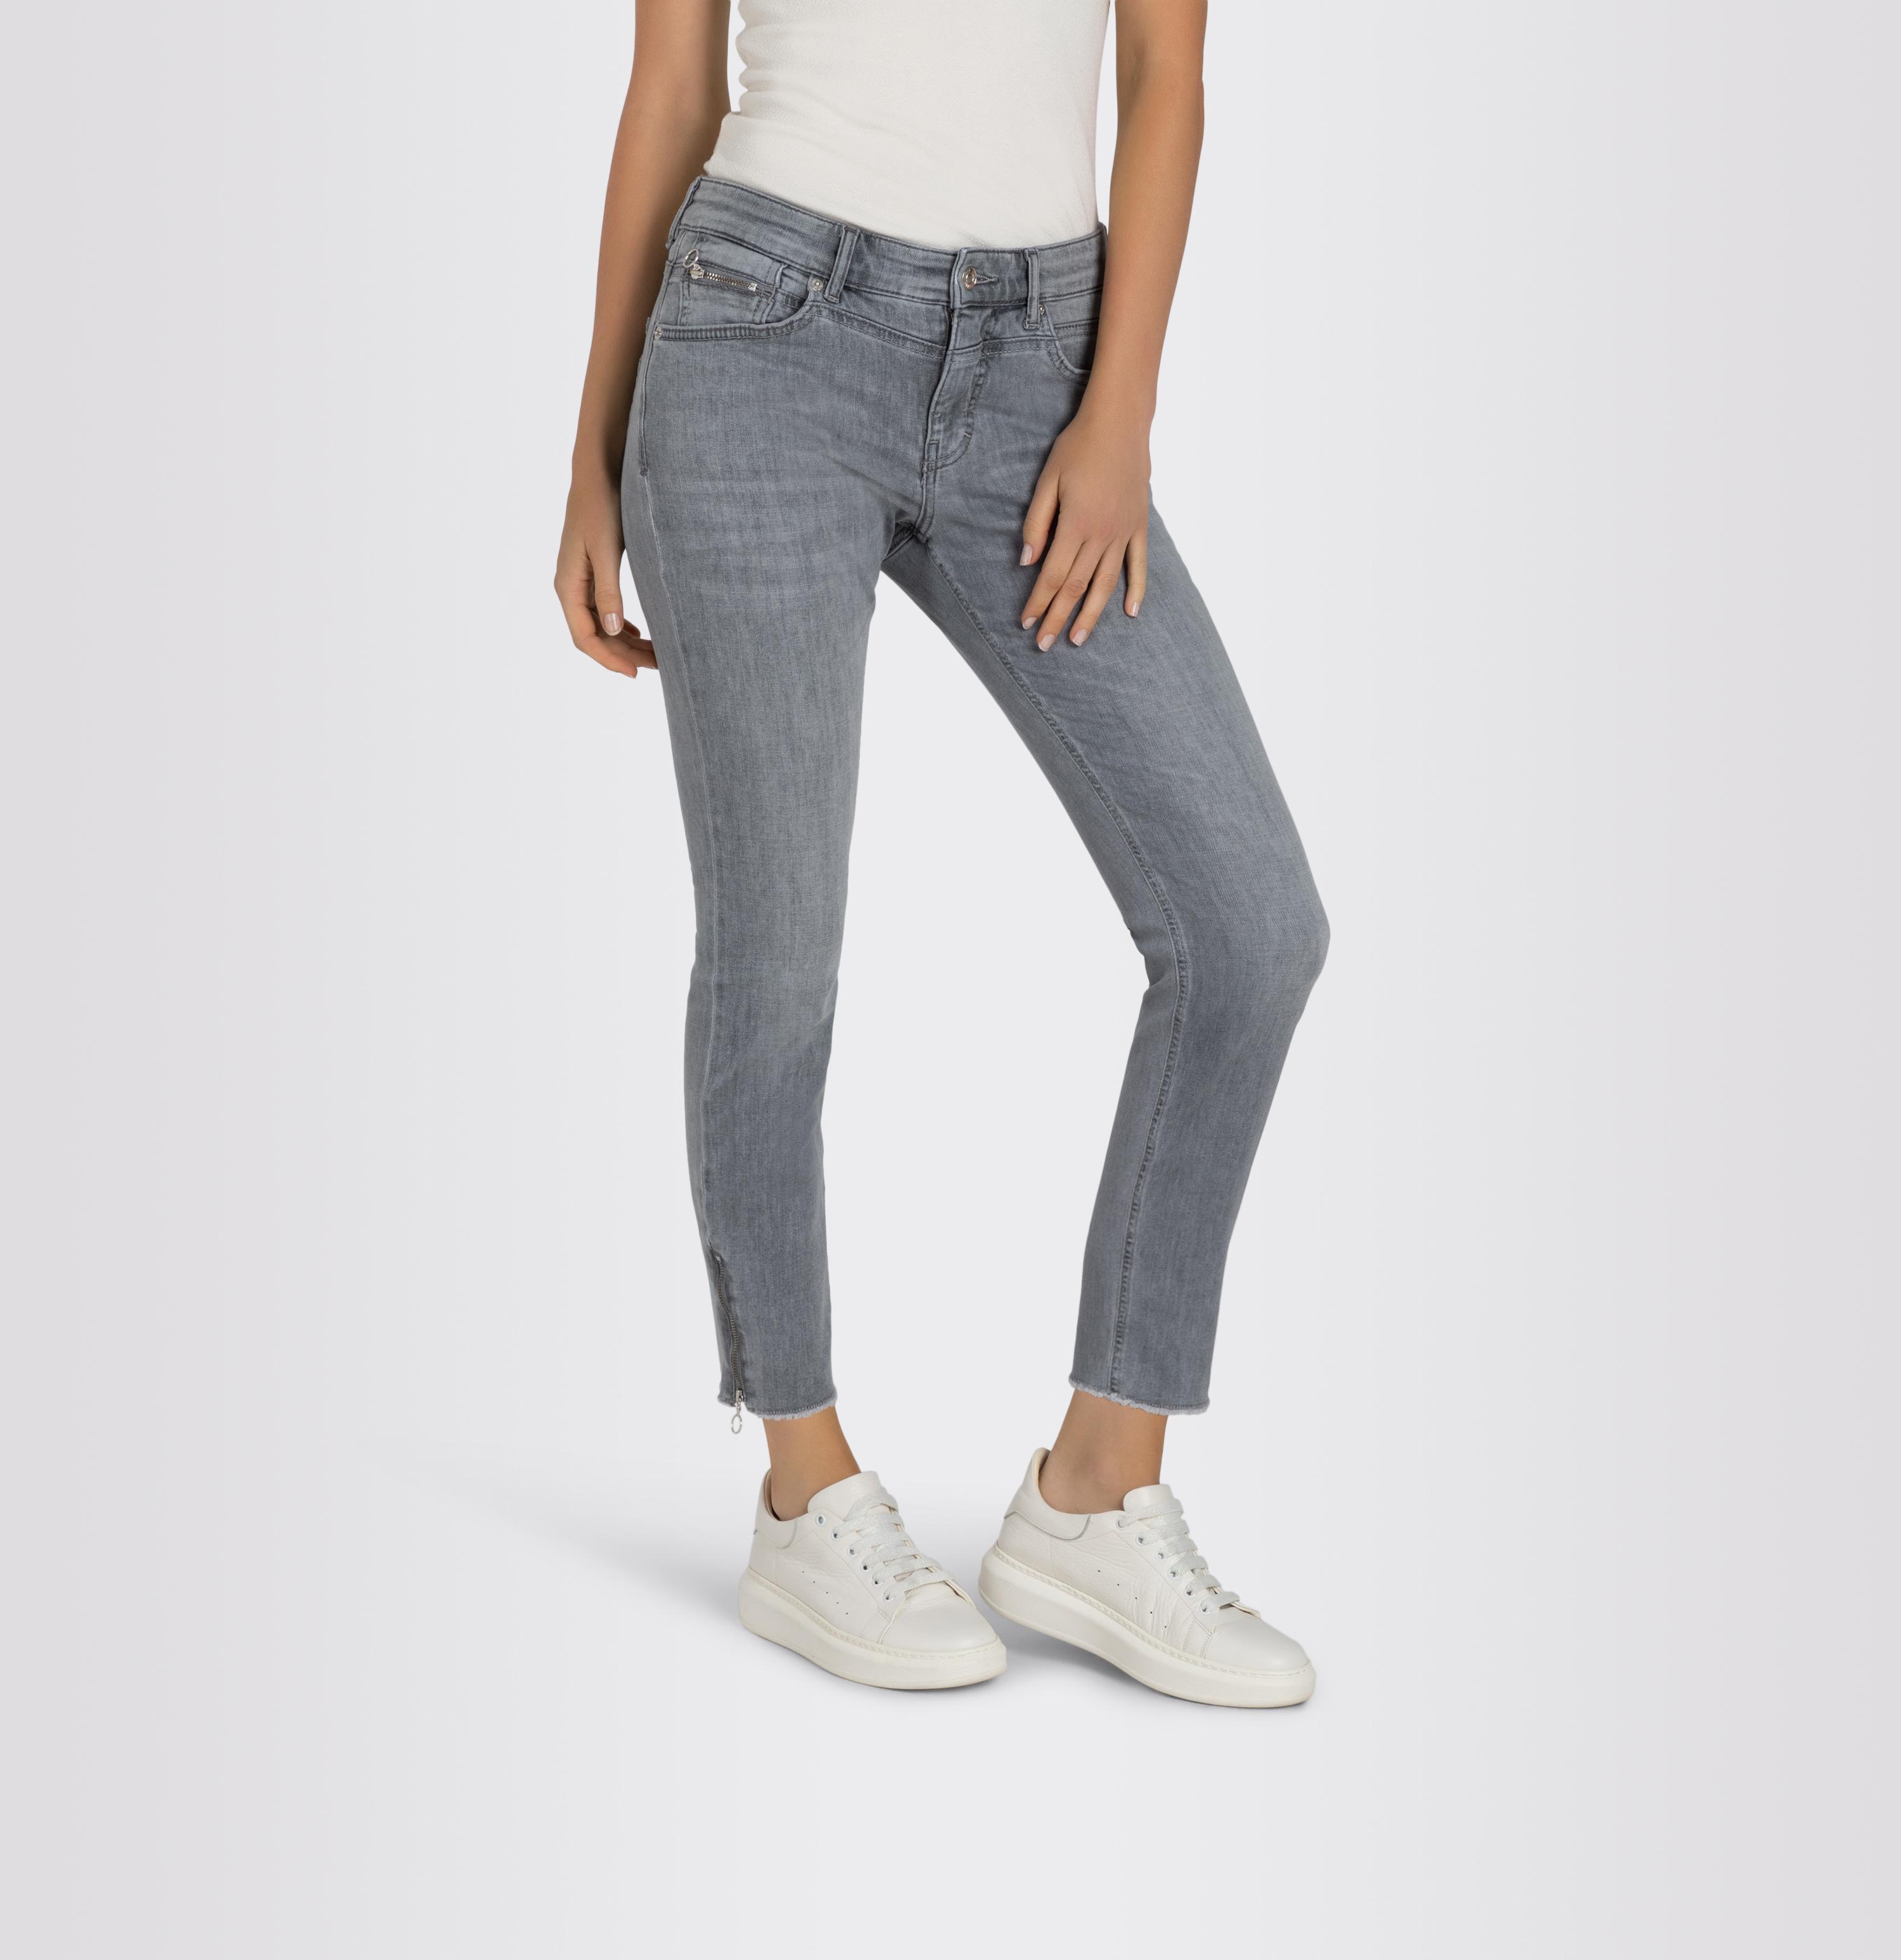 Jeans - Pants, grey | D305 Slim Rich Women Light, Chic, Shop MAC GR